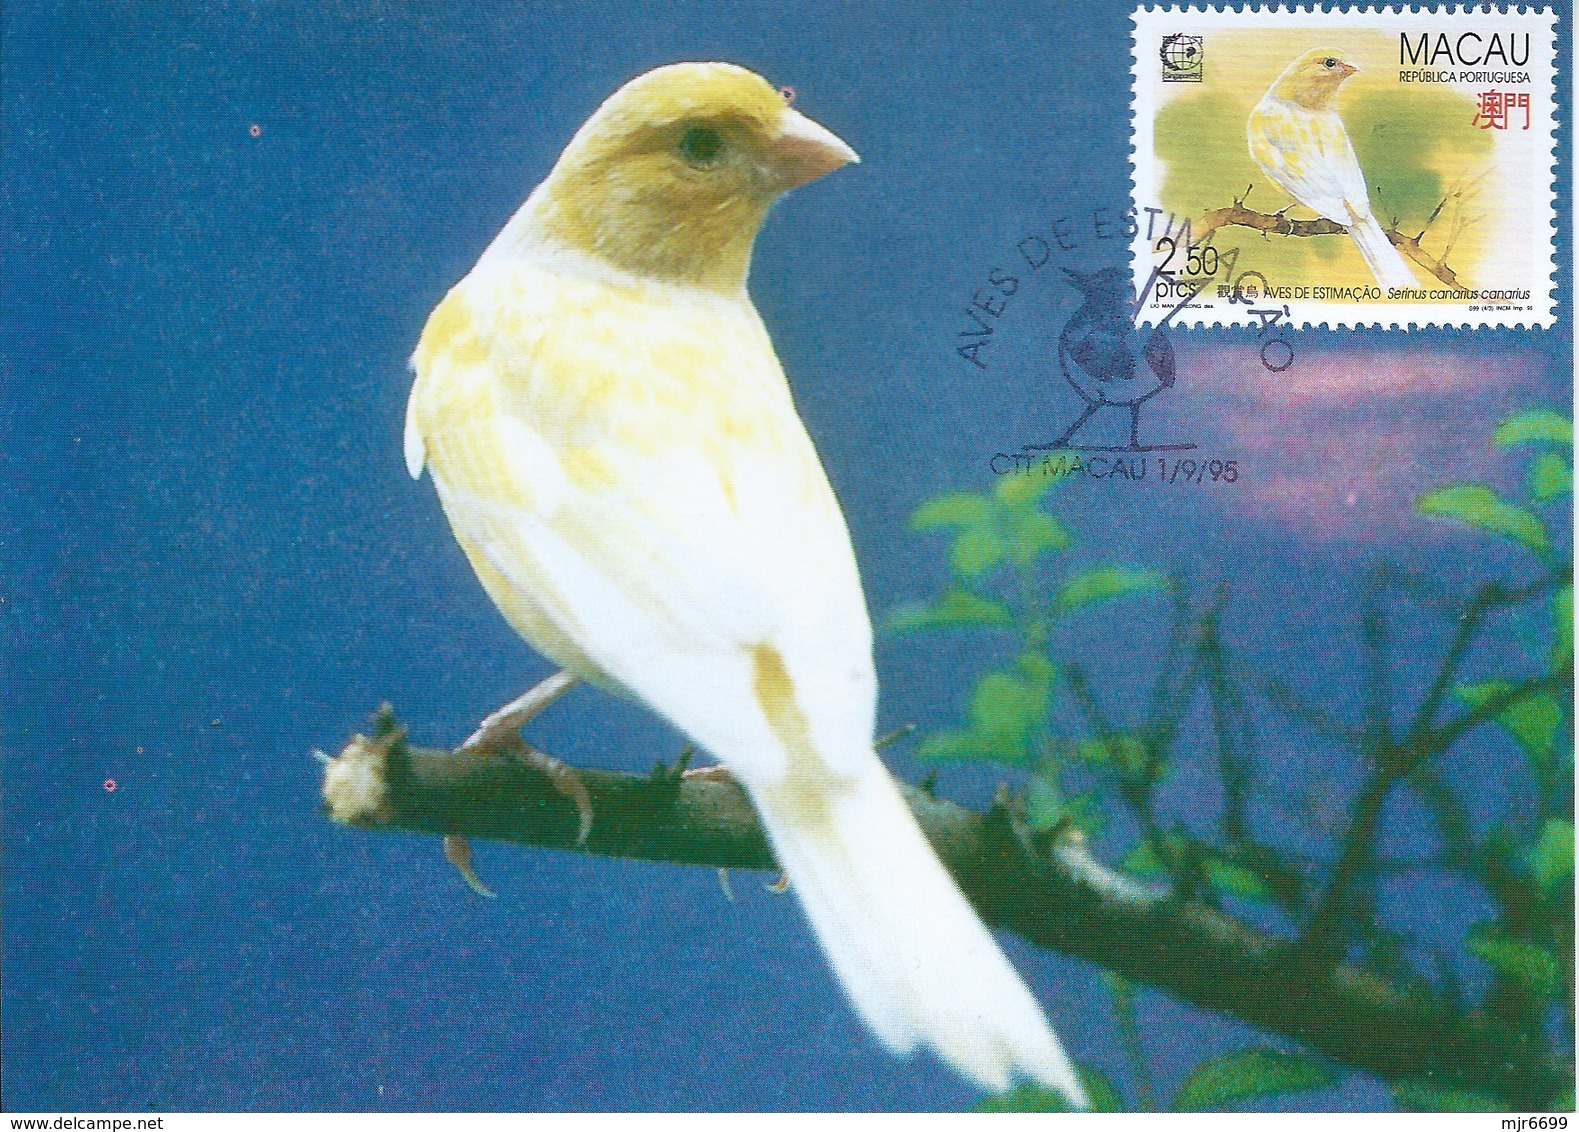 MACAU 1995 BIRDS MAXIMUM CARD - SERINUS CANARIA - Maximumkaarten